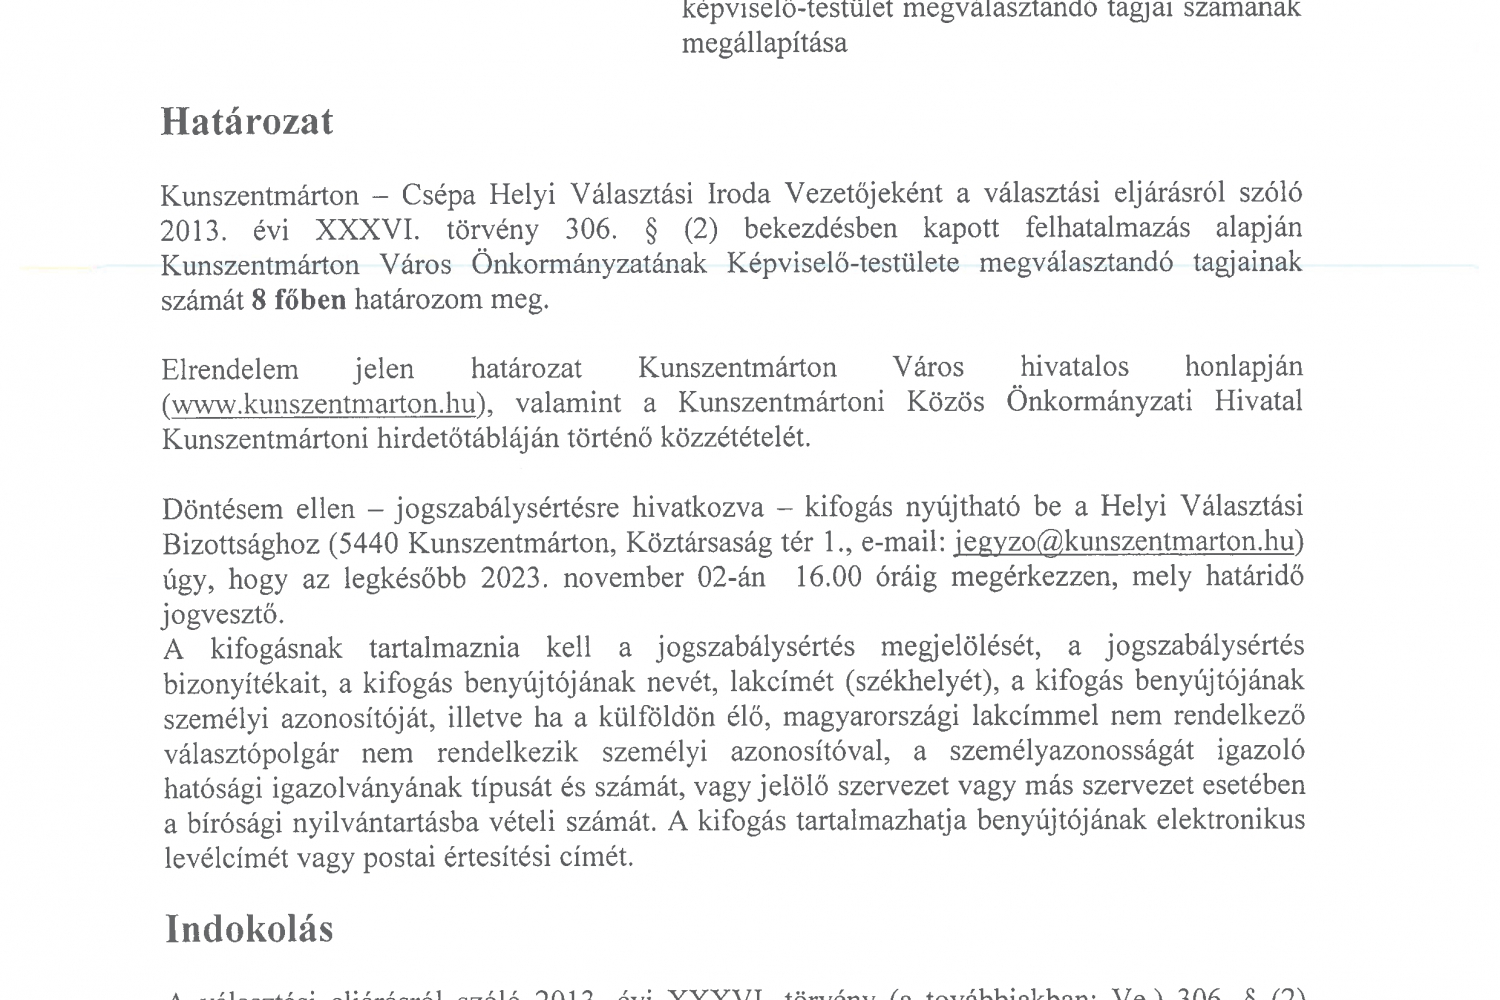 Határozat  a kunszentmártoni helyi önkormányzati képviselő-testület megválasztandó tagjai számának megállapításáról